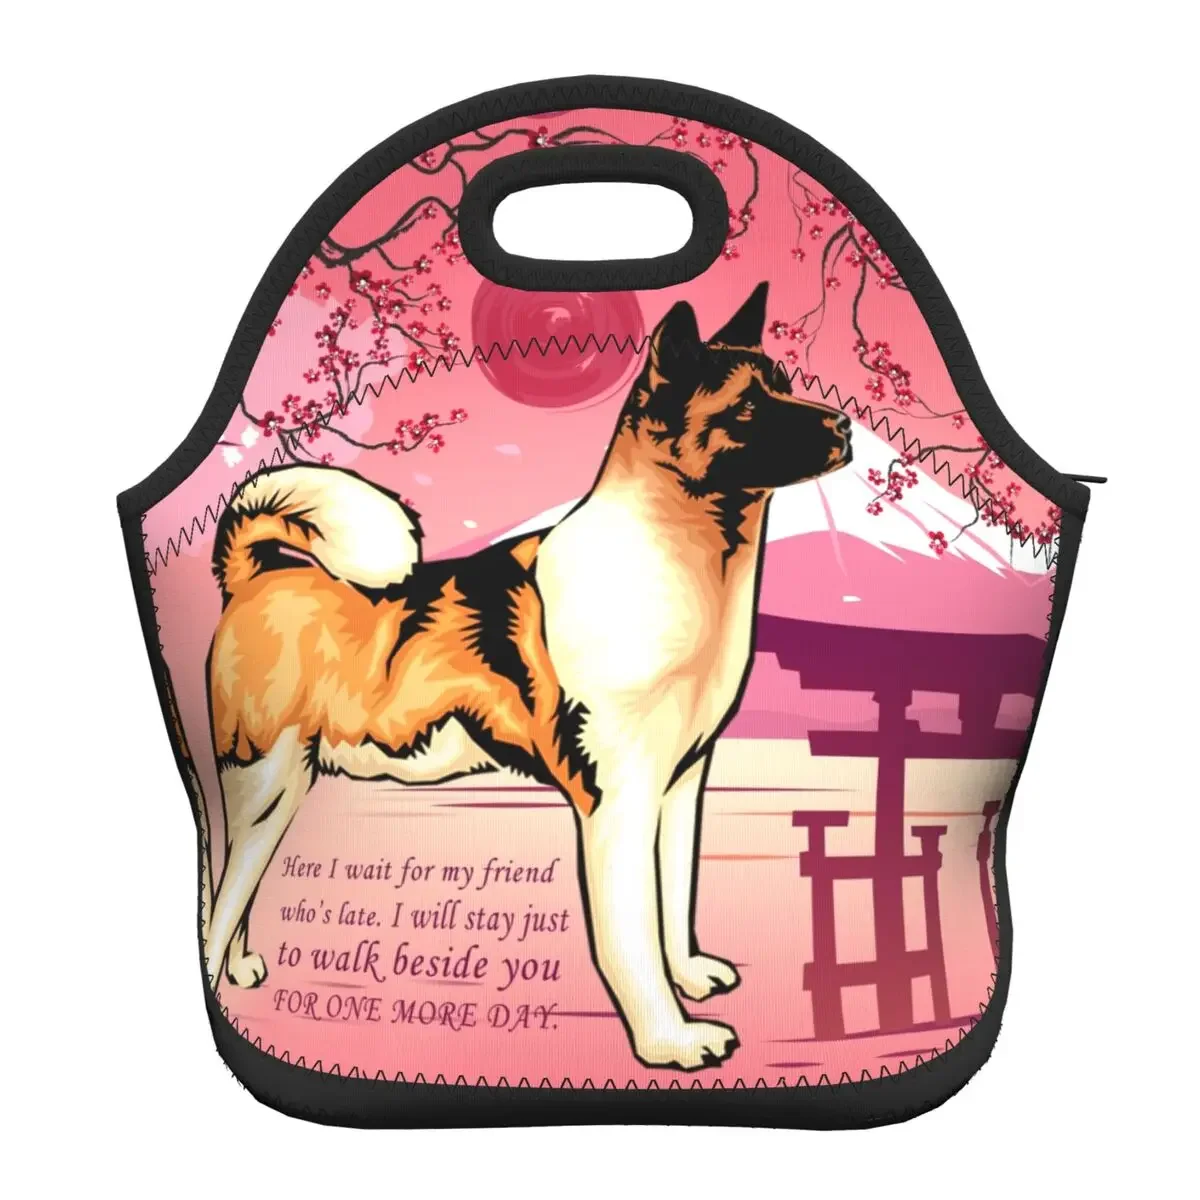 

Неопреновая японская термо-изолированная сумка для ланча Akita для собак, Женский японский Ланч-контейнер Inu для щенков для работы, школы, путешествий, коробка для еды